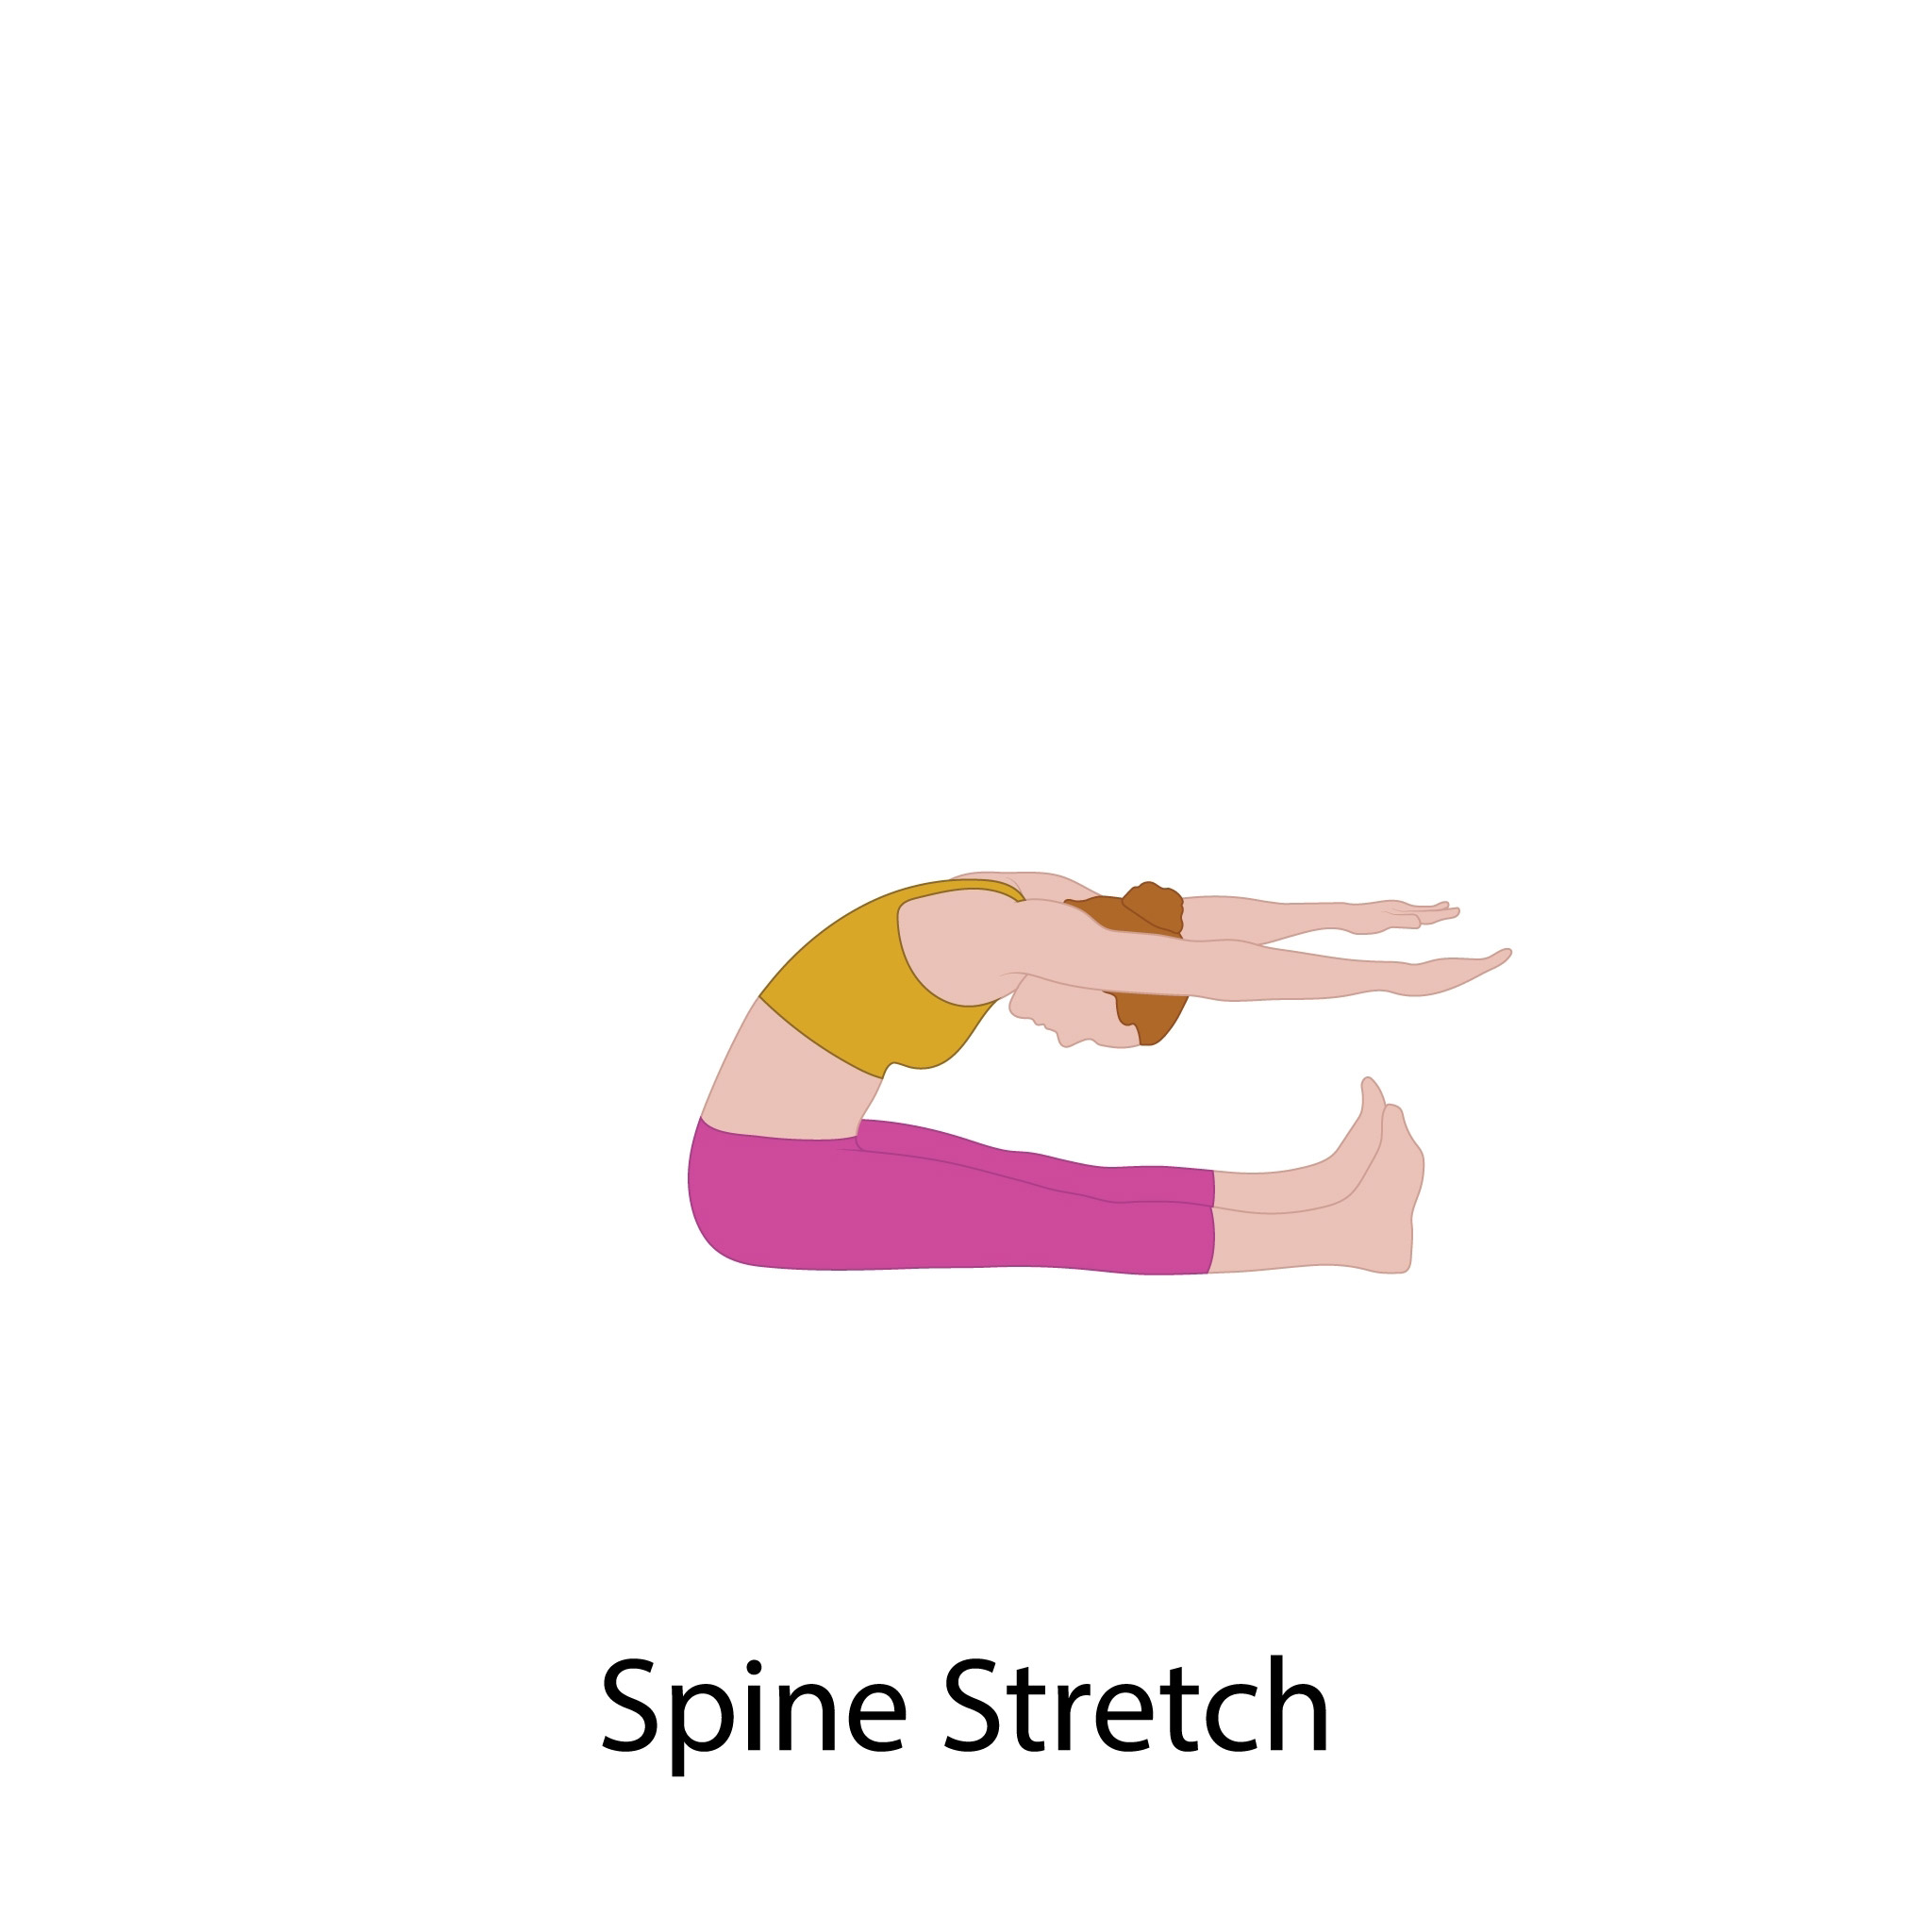 Spine stretch forward 6 rip